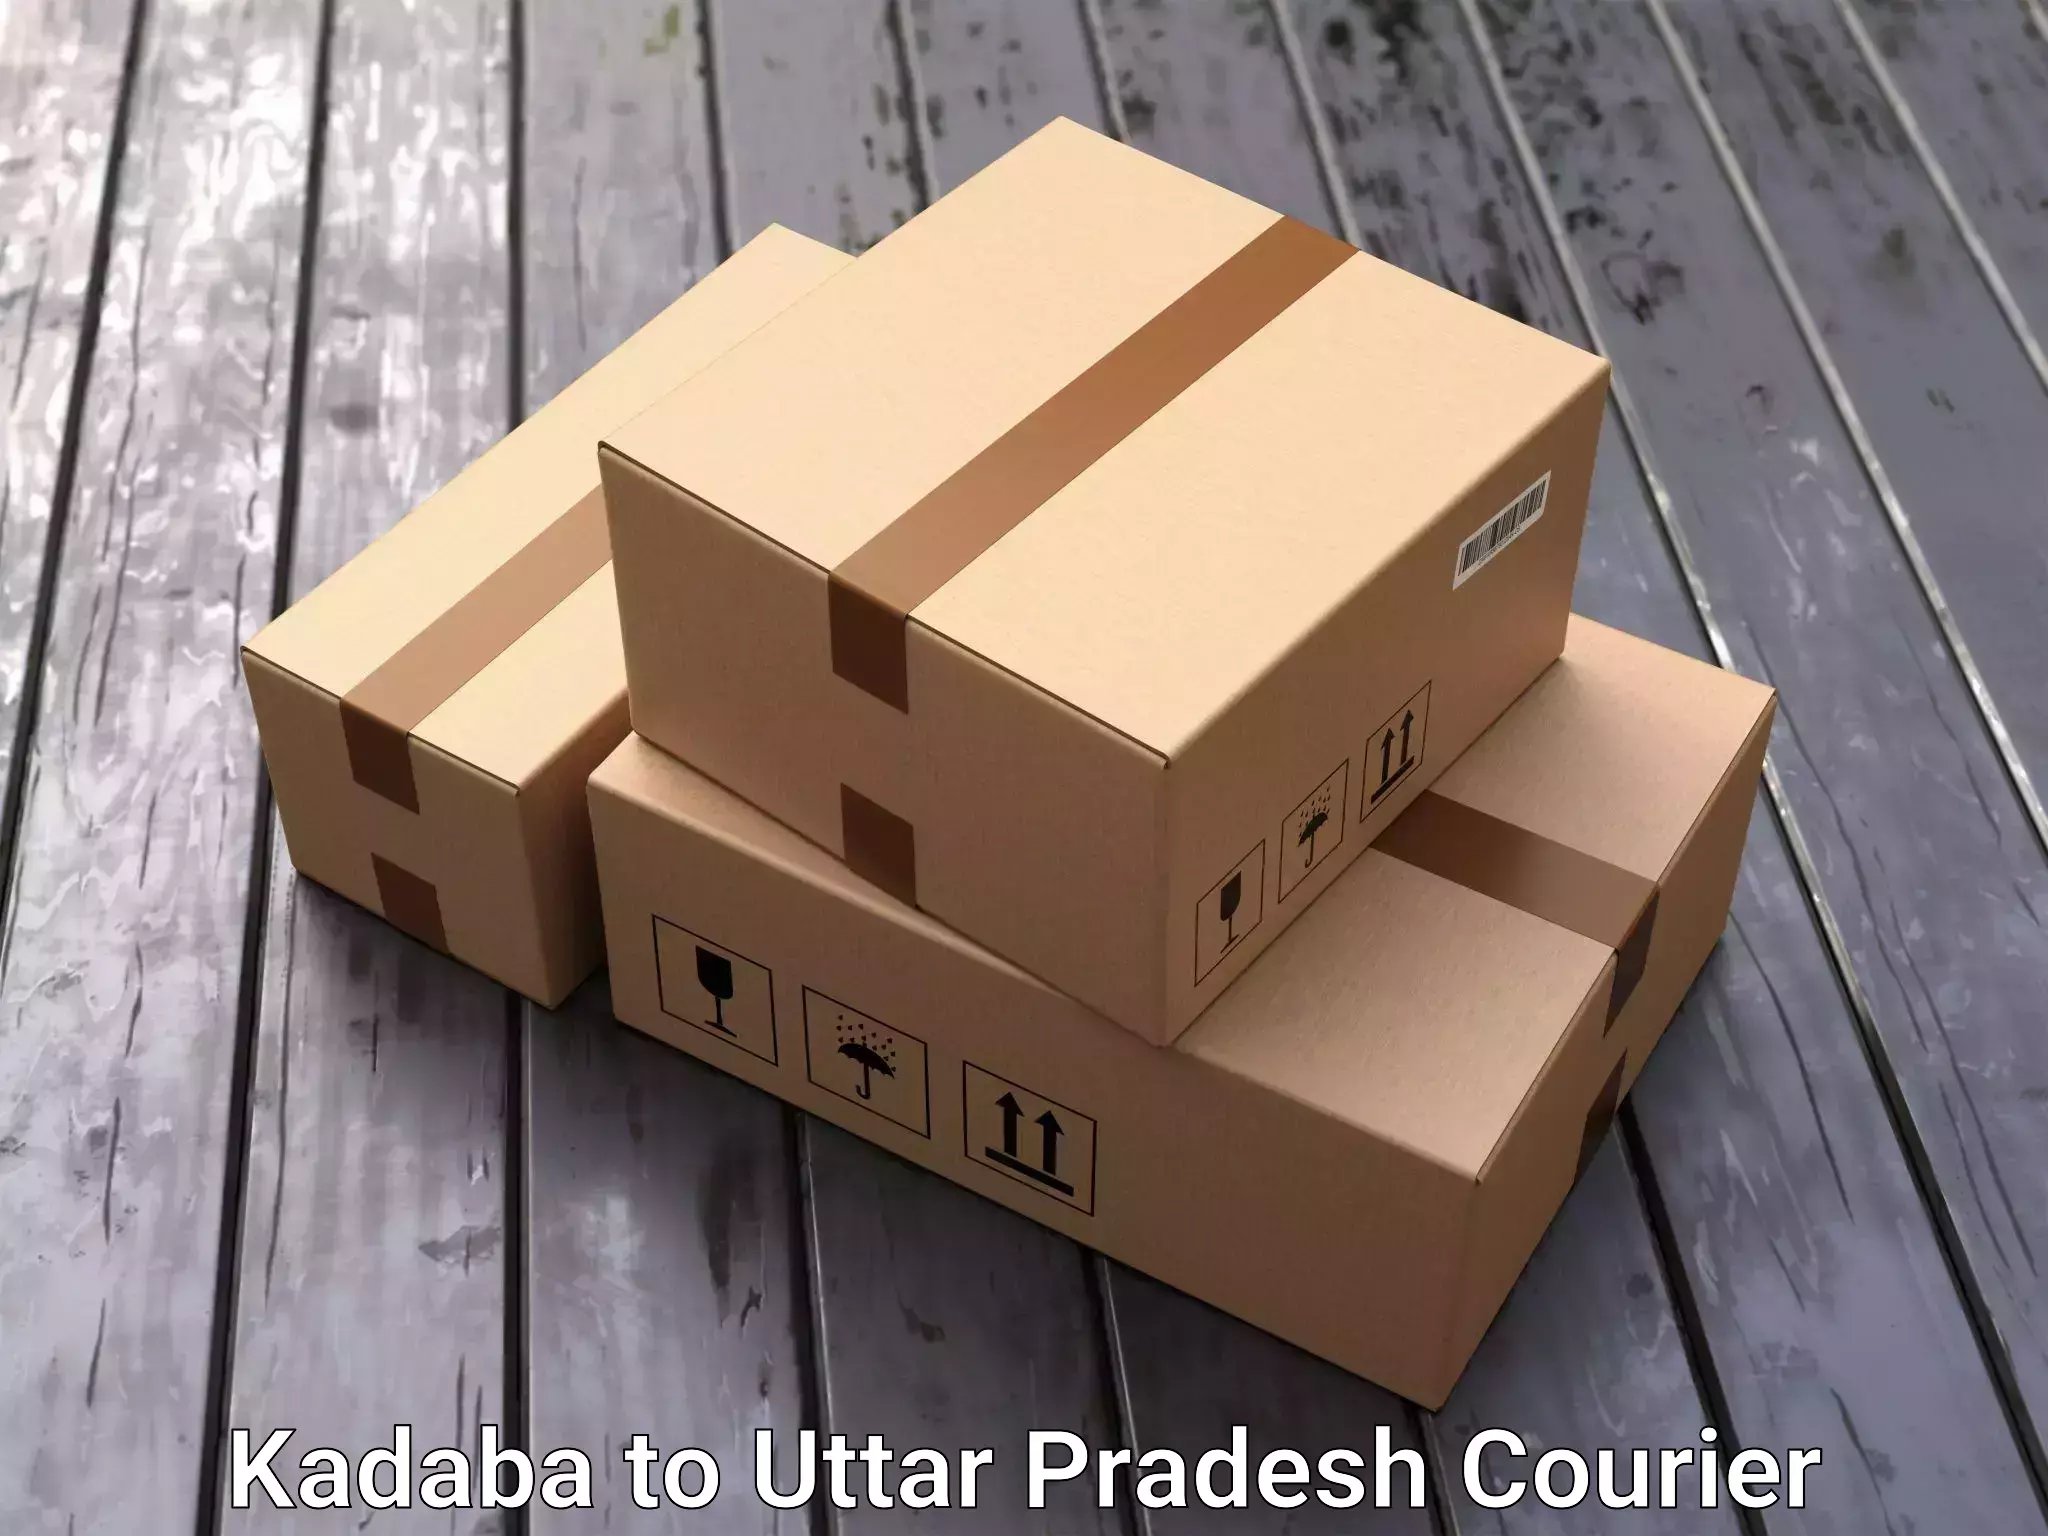 Door-to-door relocation services Kadaba to Uttar Pradesh